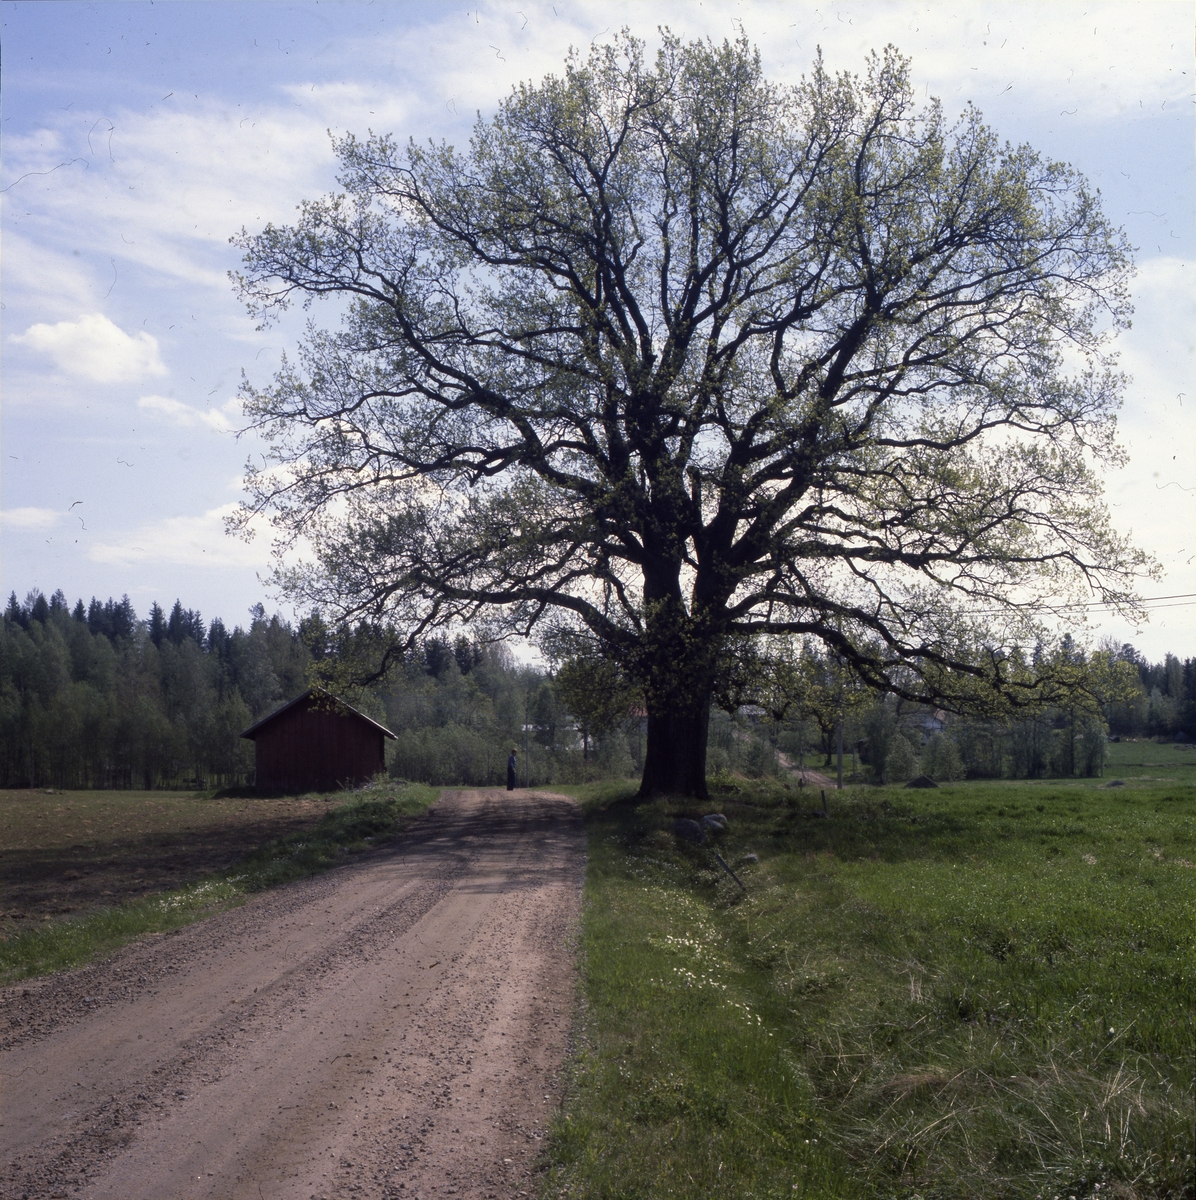 Eken i Skog, maj 1979. En stor ek växer alldeles intill en grusväg som går genom grönskande åkrar.